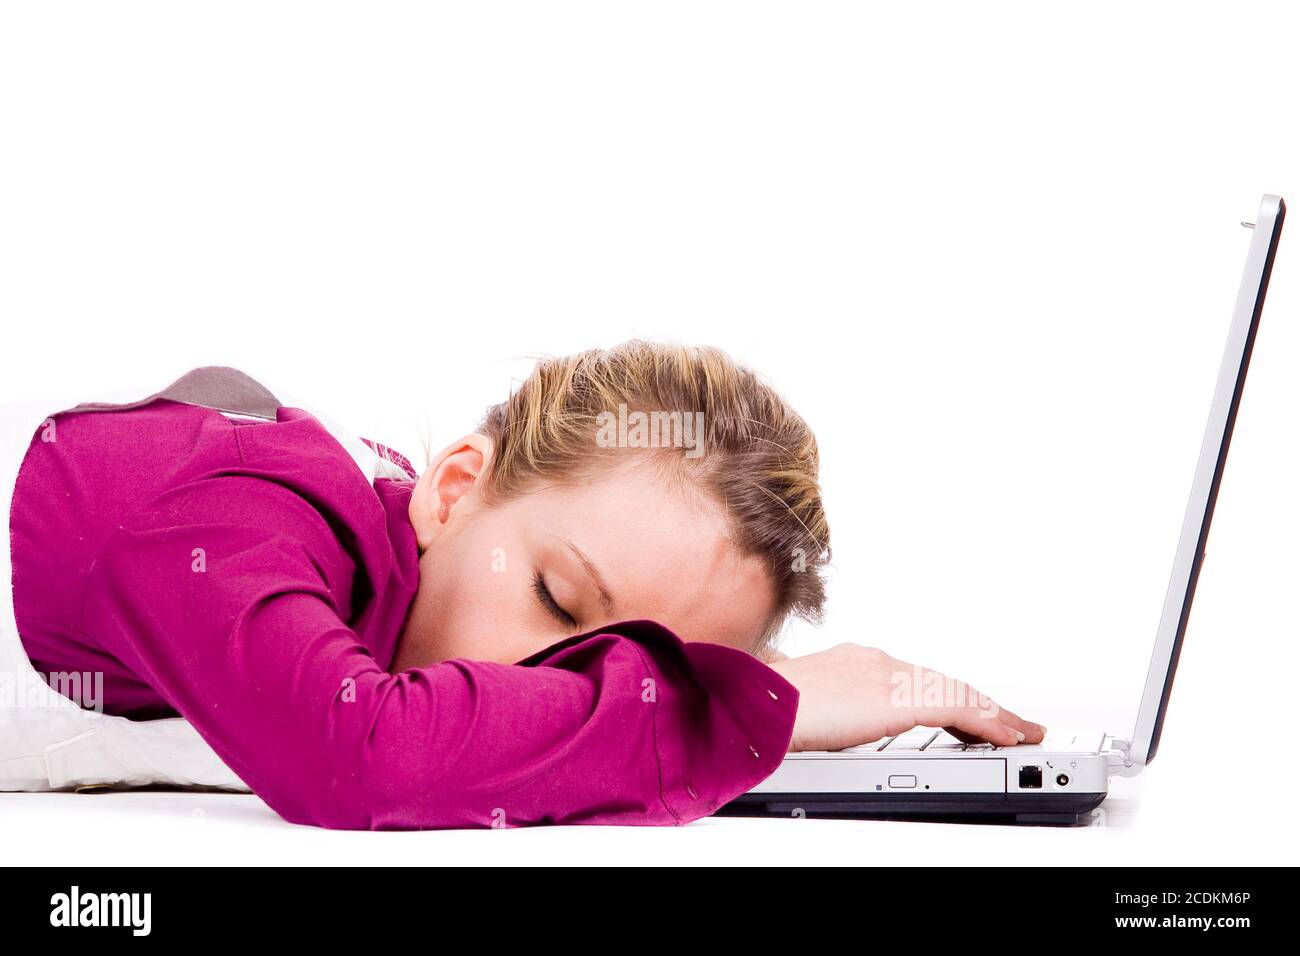 Включи экран спать. Заснуть у ноута. Картинка уснул на ноутбуке. Спящий режим фото.